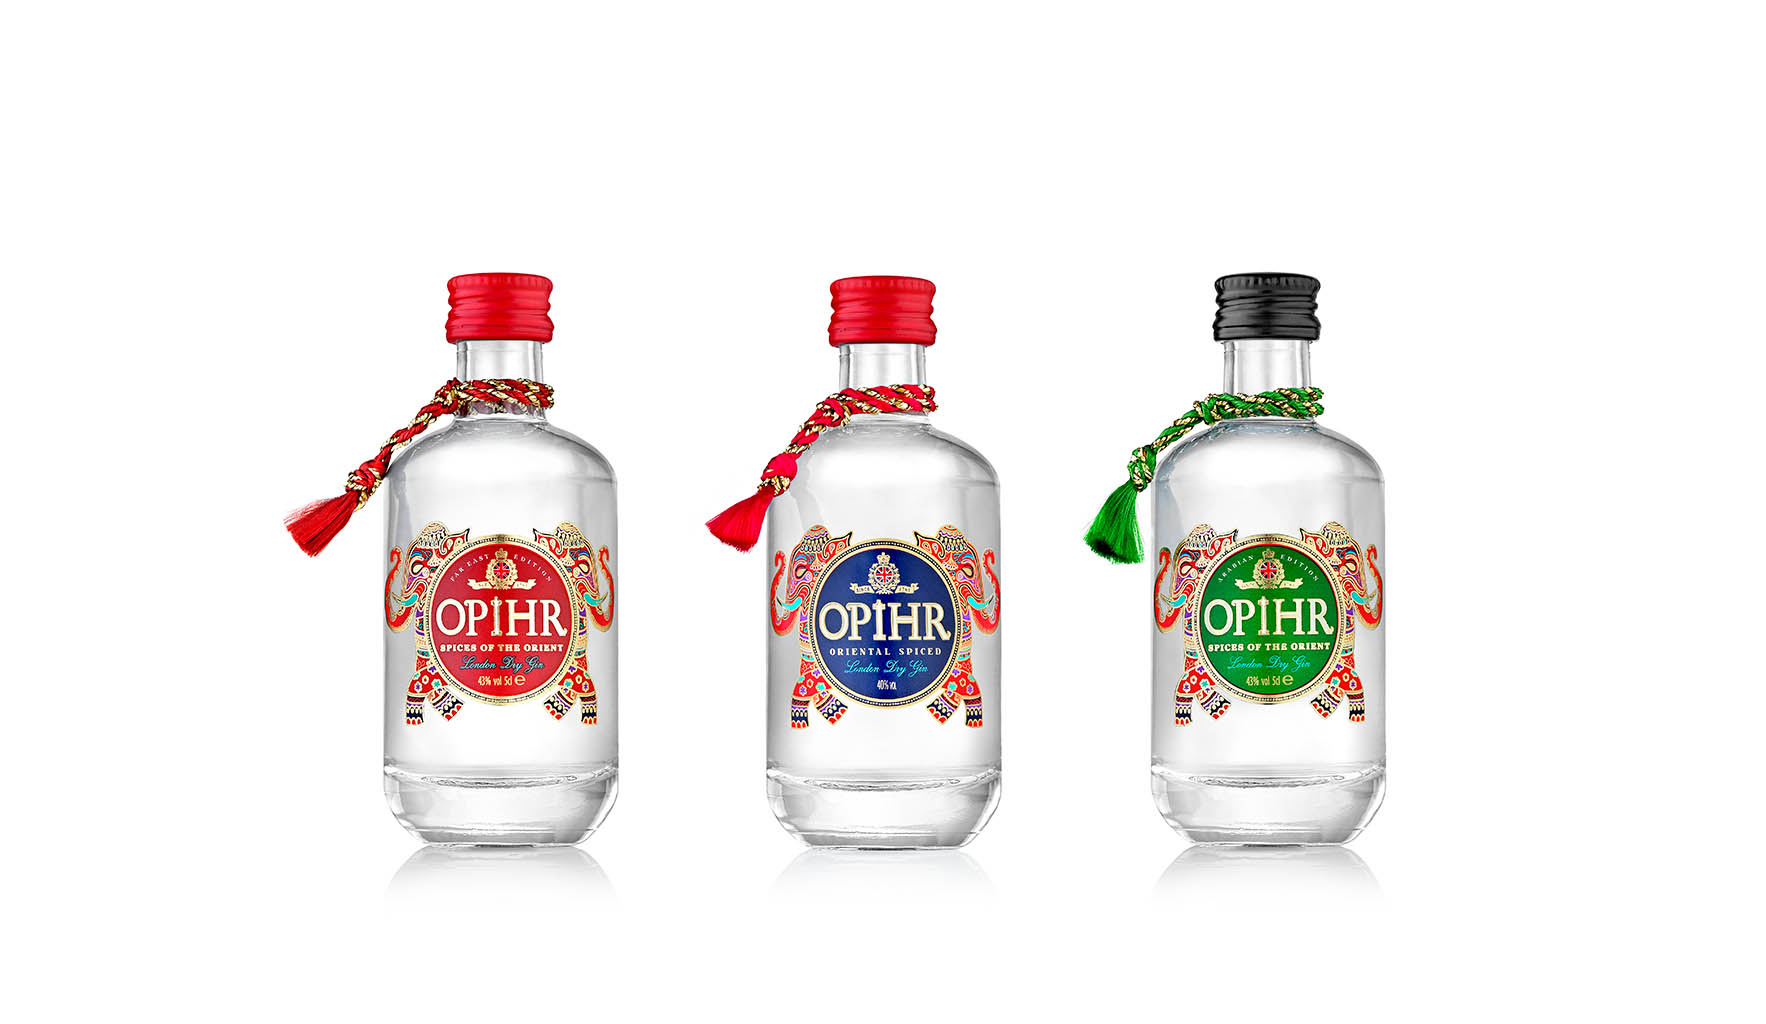 Packshot Factory - Bottle - Opihr gin bottles